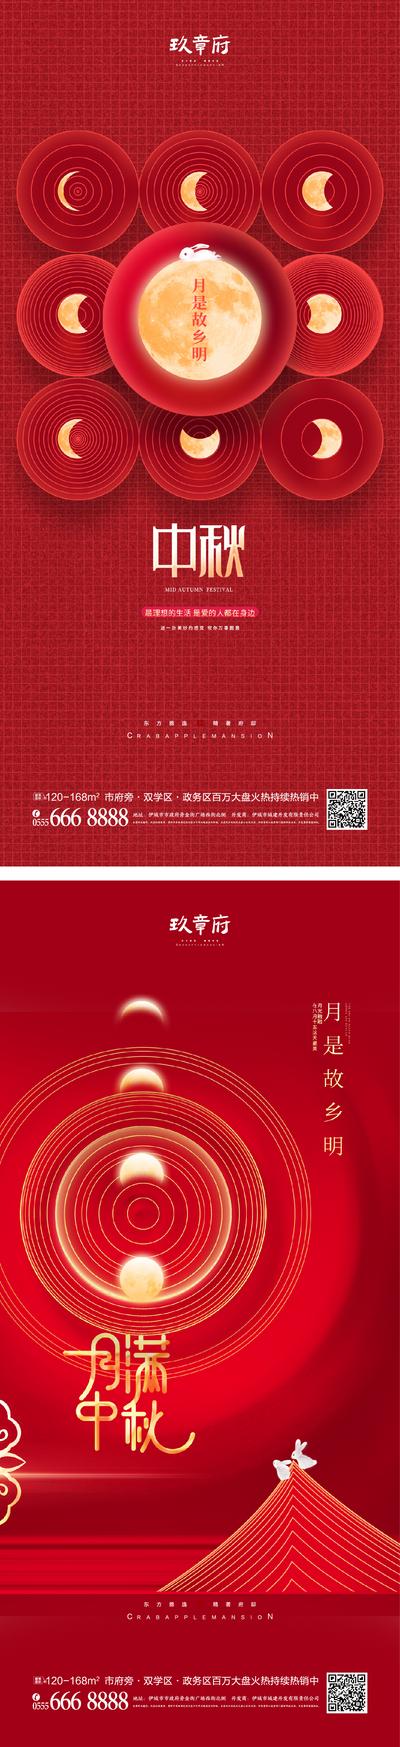 南门网 海报 房地产 中国传统节日 中秋节 月亮 兔子 剪影 创意 图形化 简约